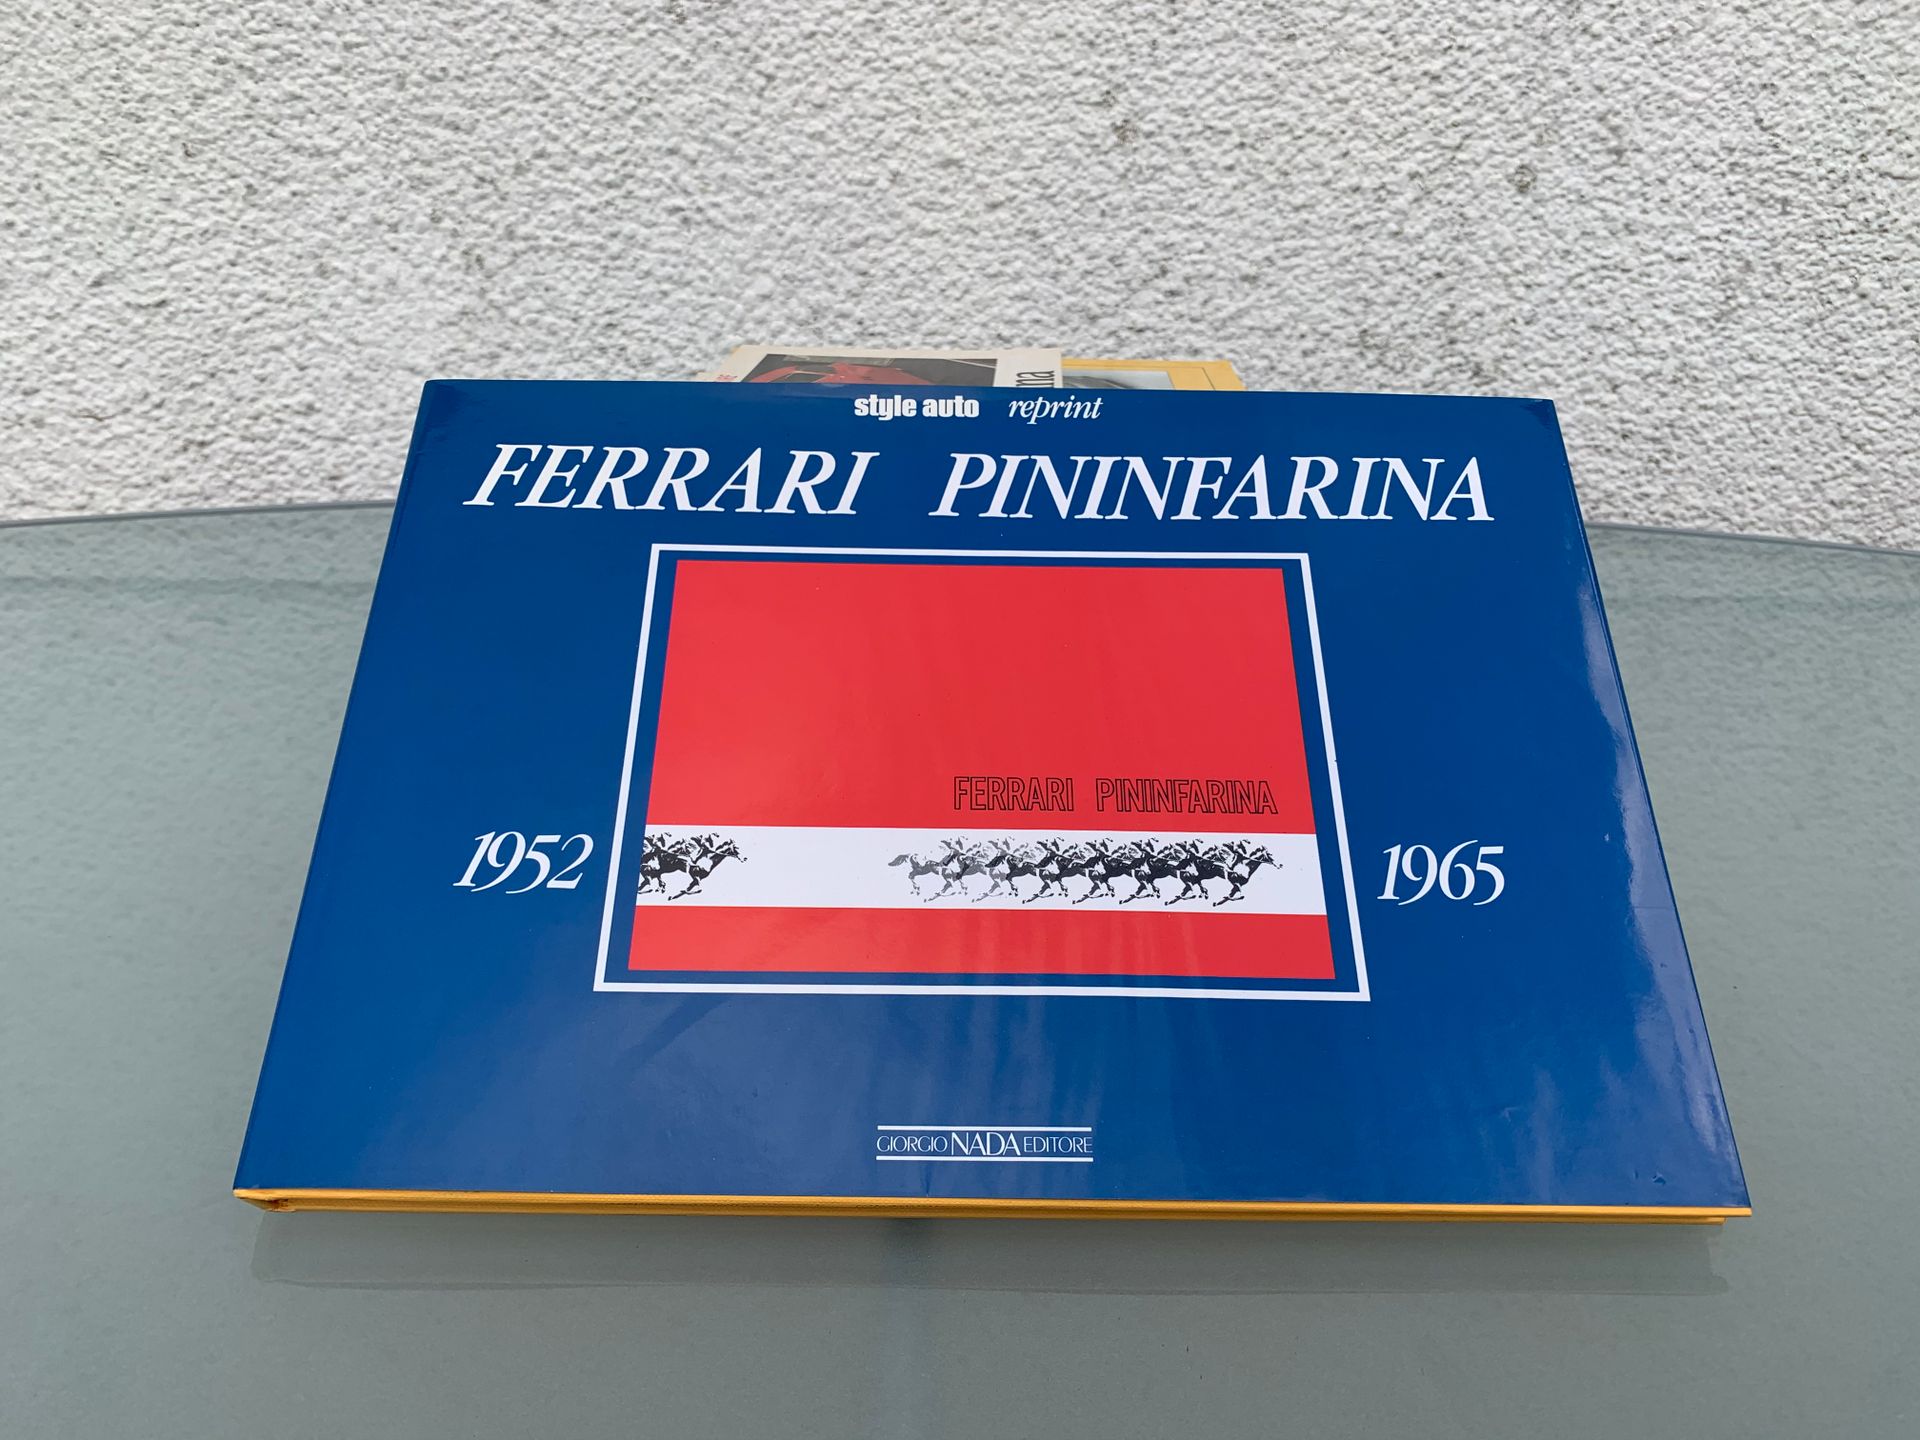 Null 2 Pininfarina booklets
Pininfarina Solitaires
The Ferrari of Pininfarina
Fe&hellip;